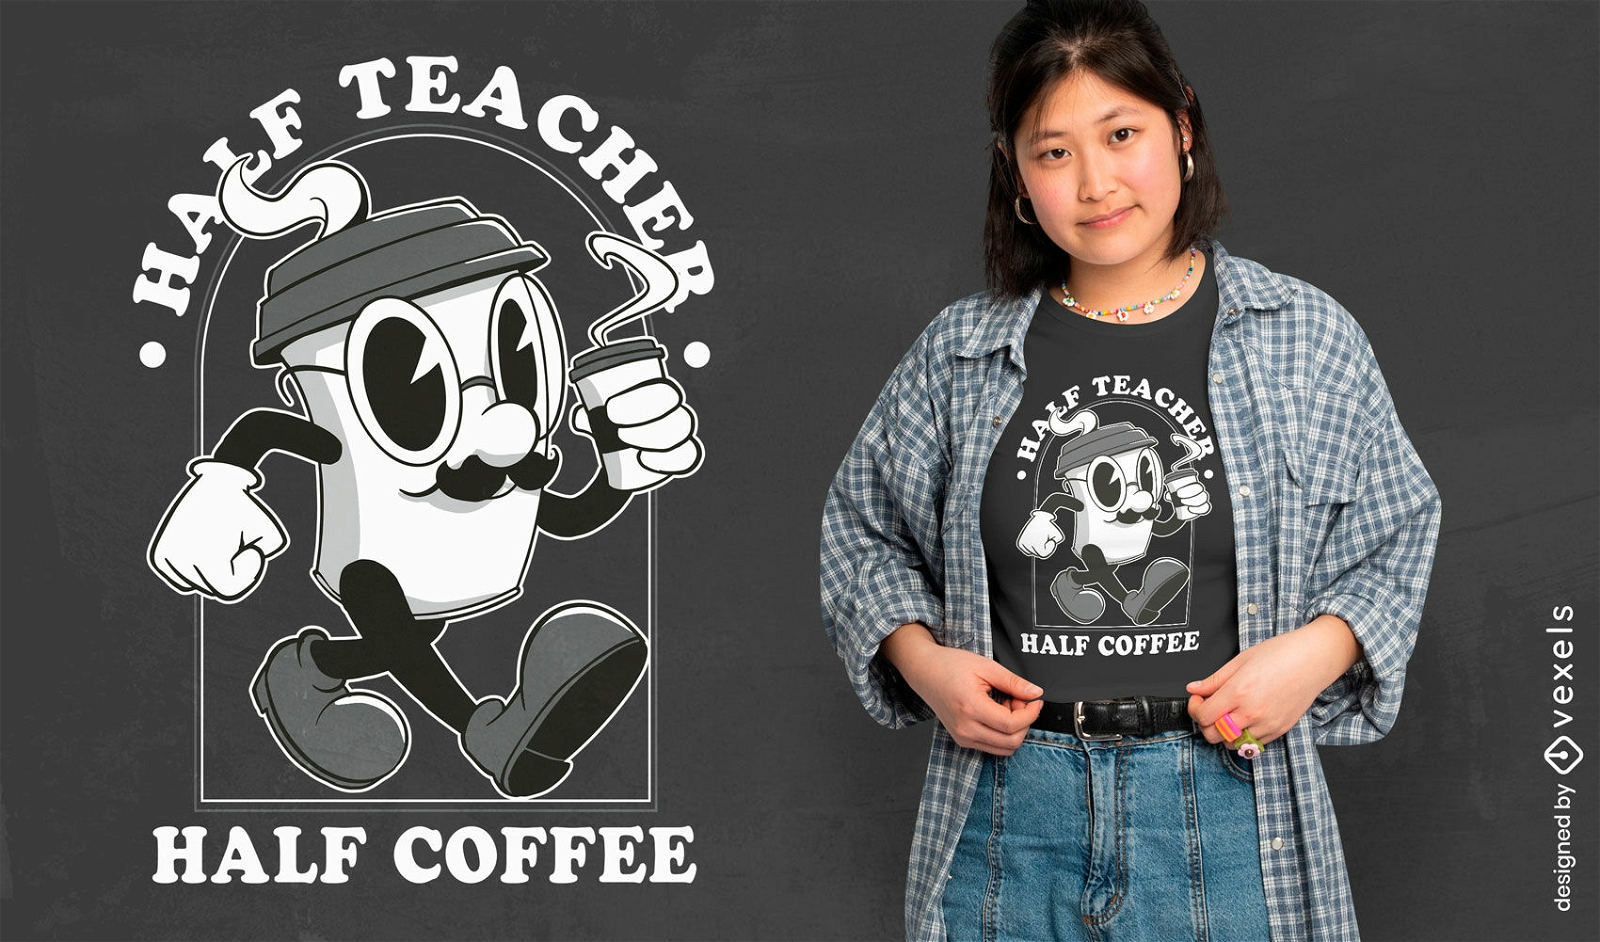 Coffee lover teacher t-shirt design